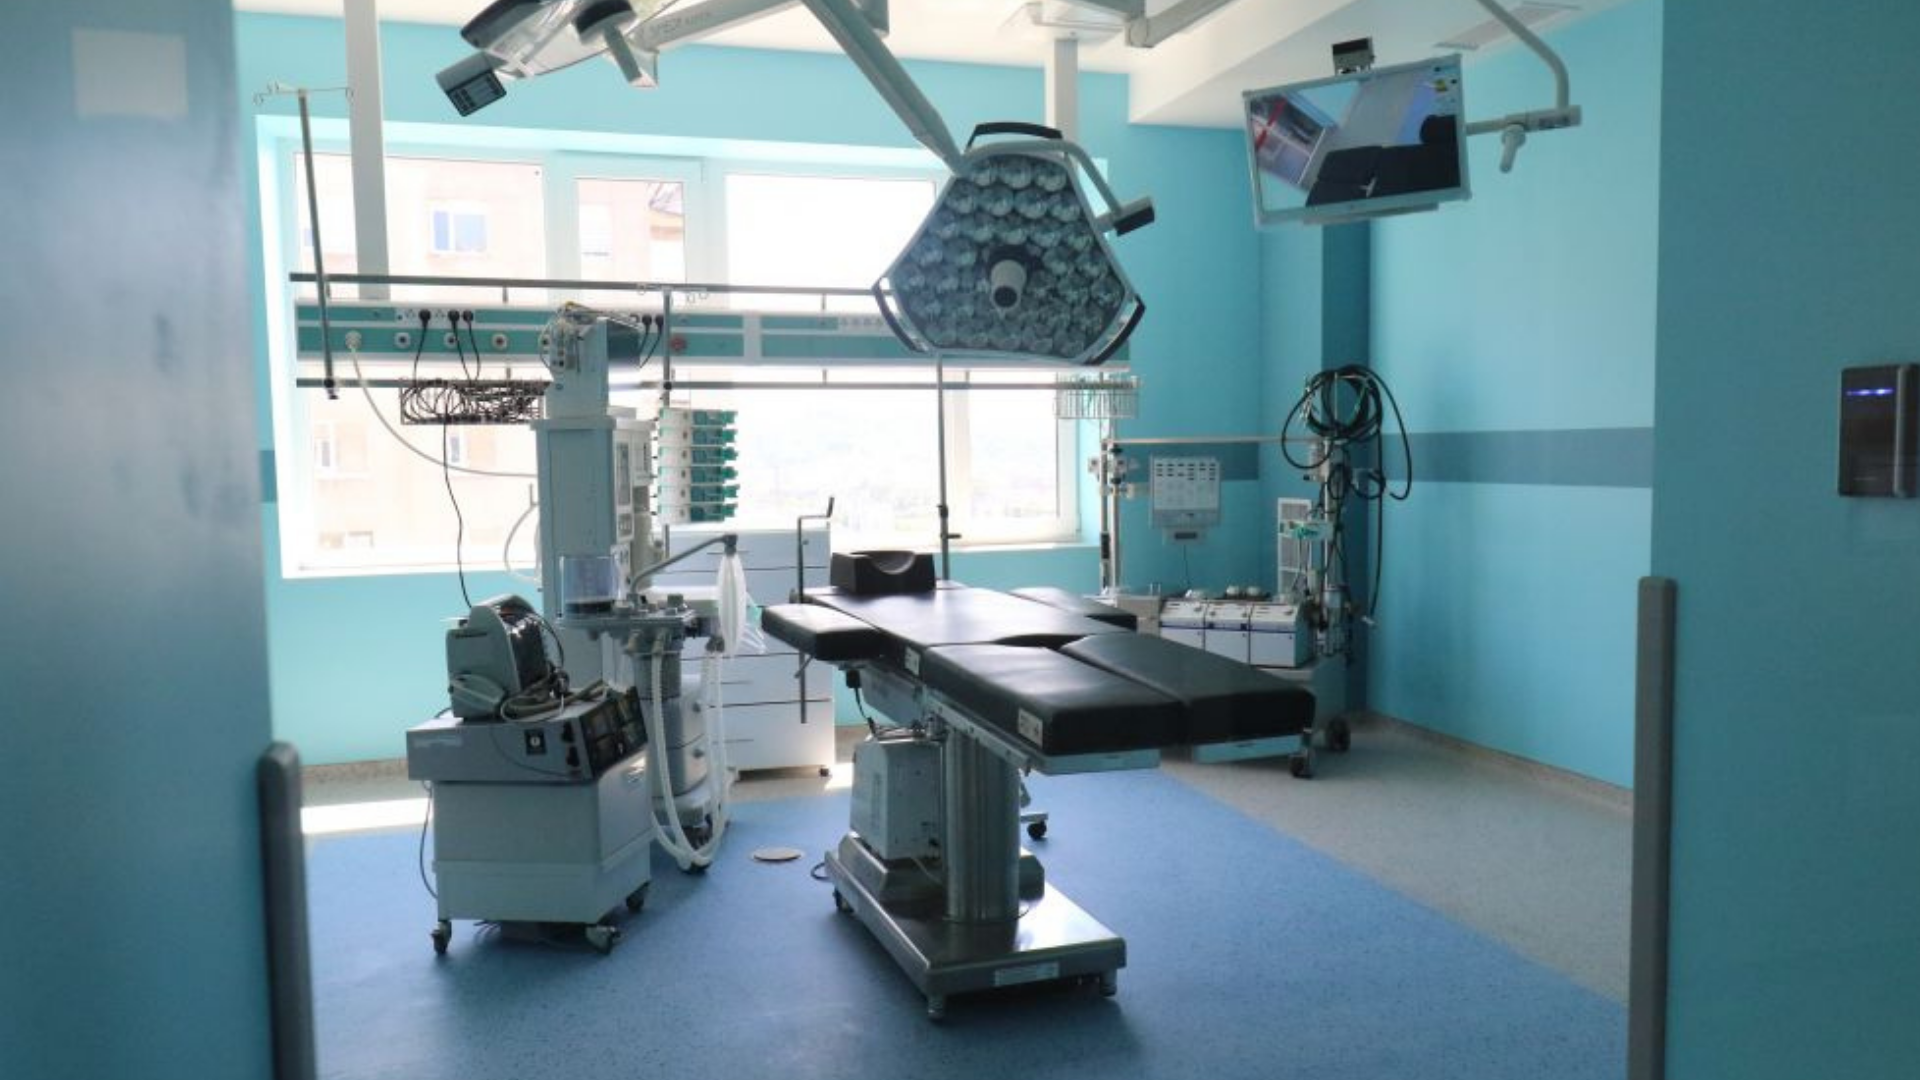 Вартість 300 тисяч доларів: Львову подарували устаткування для кардіохірургічного центру (відео)